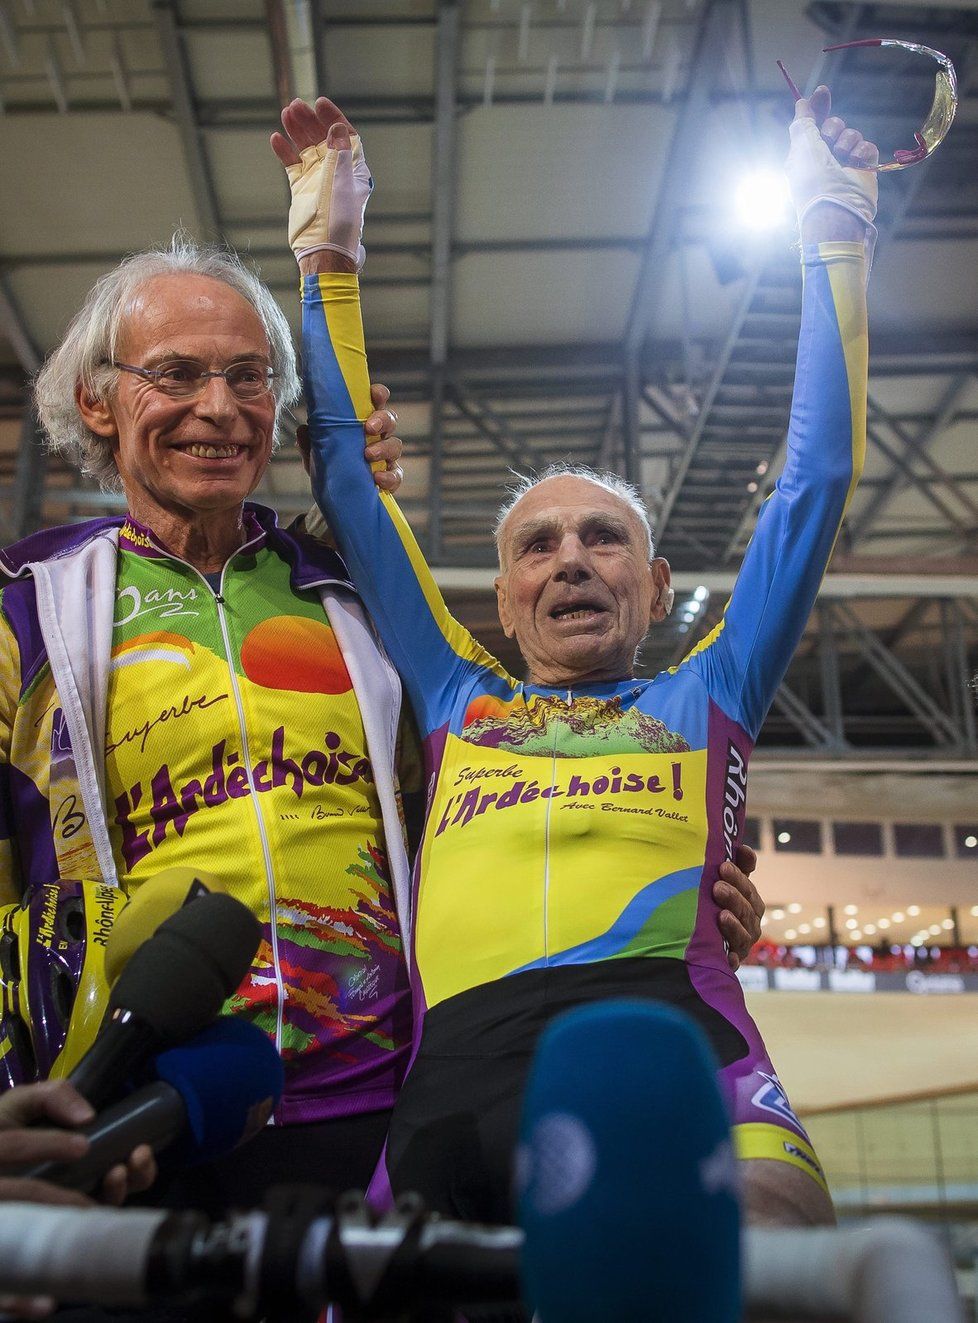 Čas pro mě neběží jinak, ujišťuje 102letý cyklista Robert Marchand, který překonal svůj rekord v hodinovce. Za 60 minut zajel na dráze  ve městě Saint Quentin en Yvelines 26,927 kilometrů